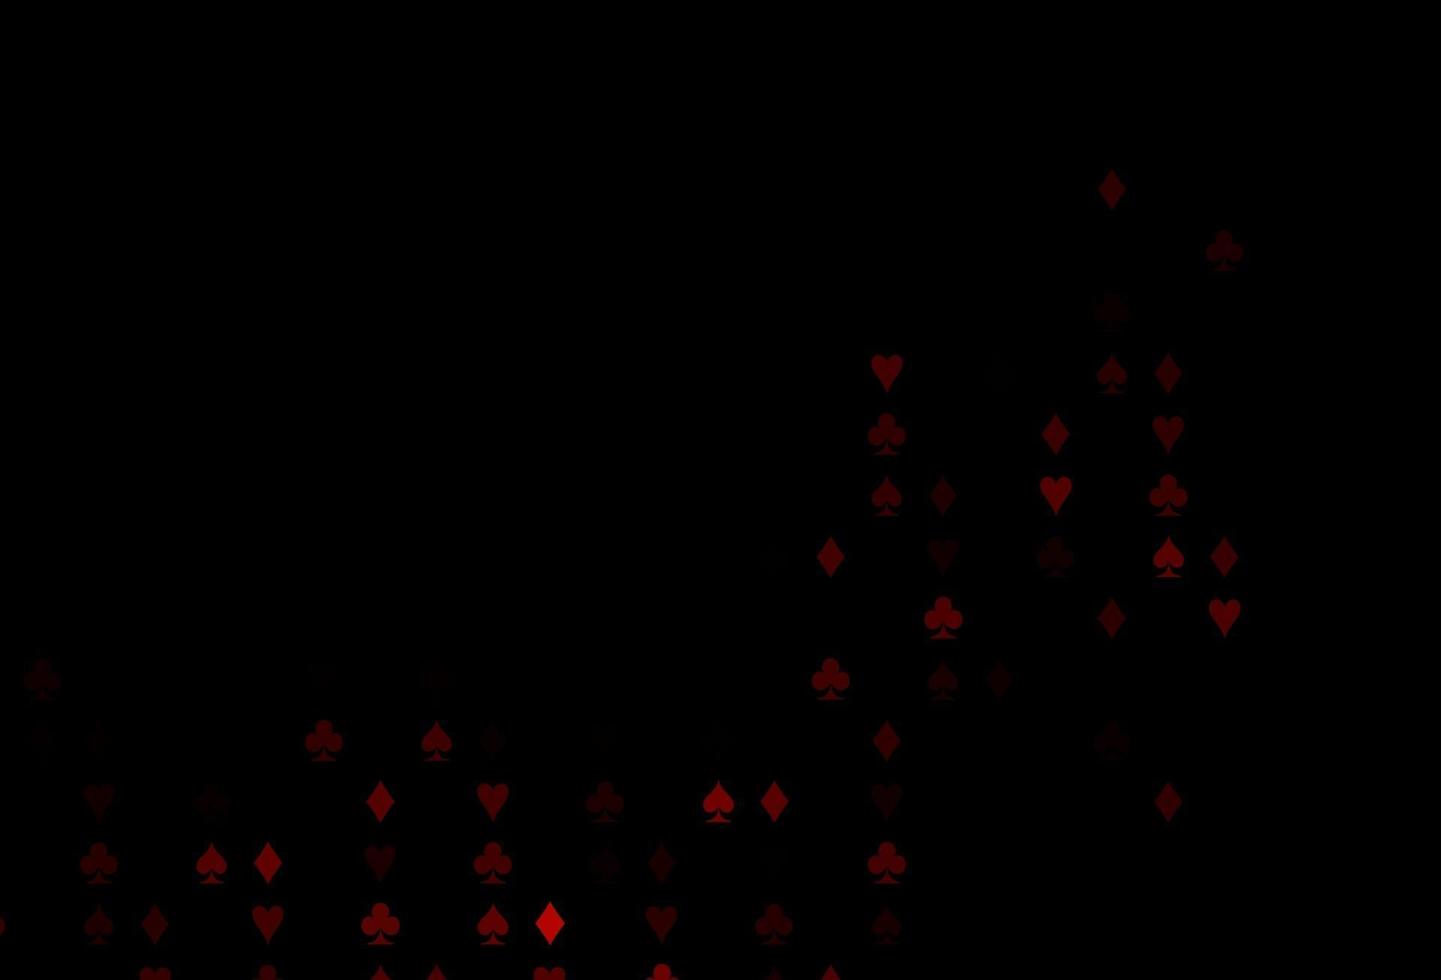 patrón de vector rojo oscuro con símbolo de tarjetas.